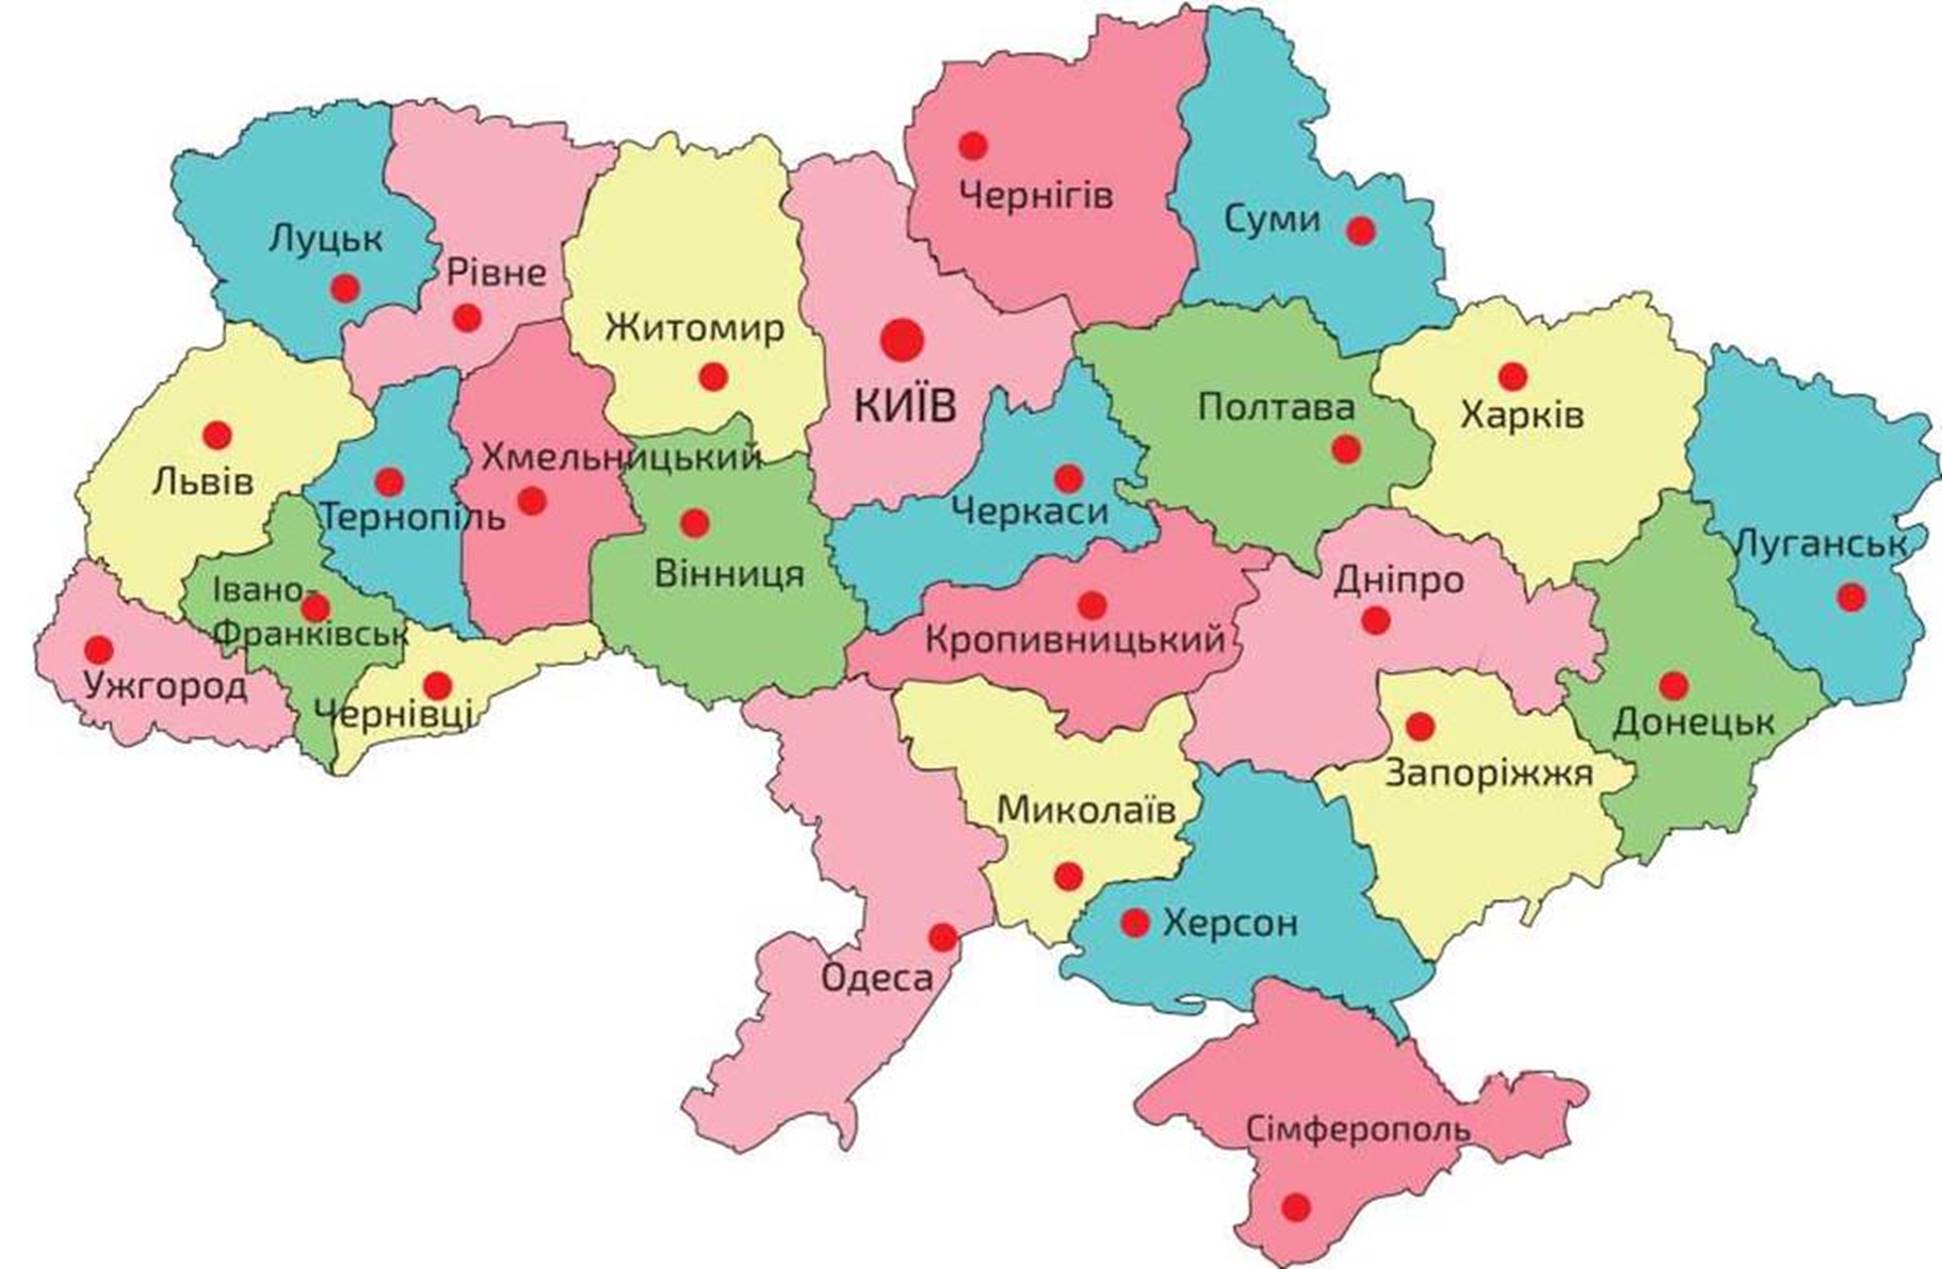 Сума город на карте. Полтава на карте Украины с городами. Карта Украины Полтава на карте. Полтава на карте Украины где находится. Украина вккартаполтава.